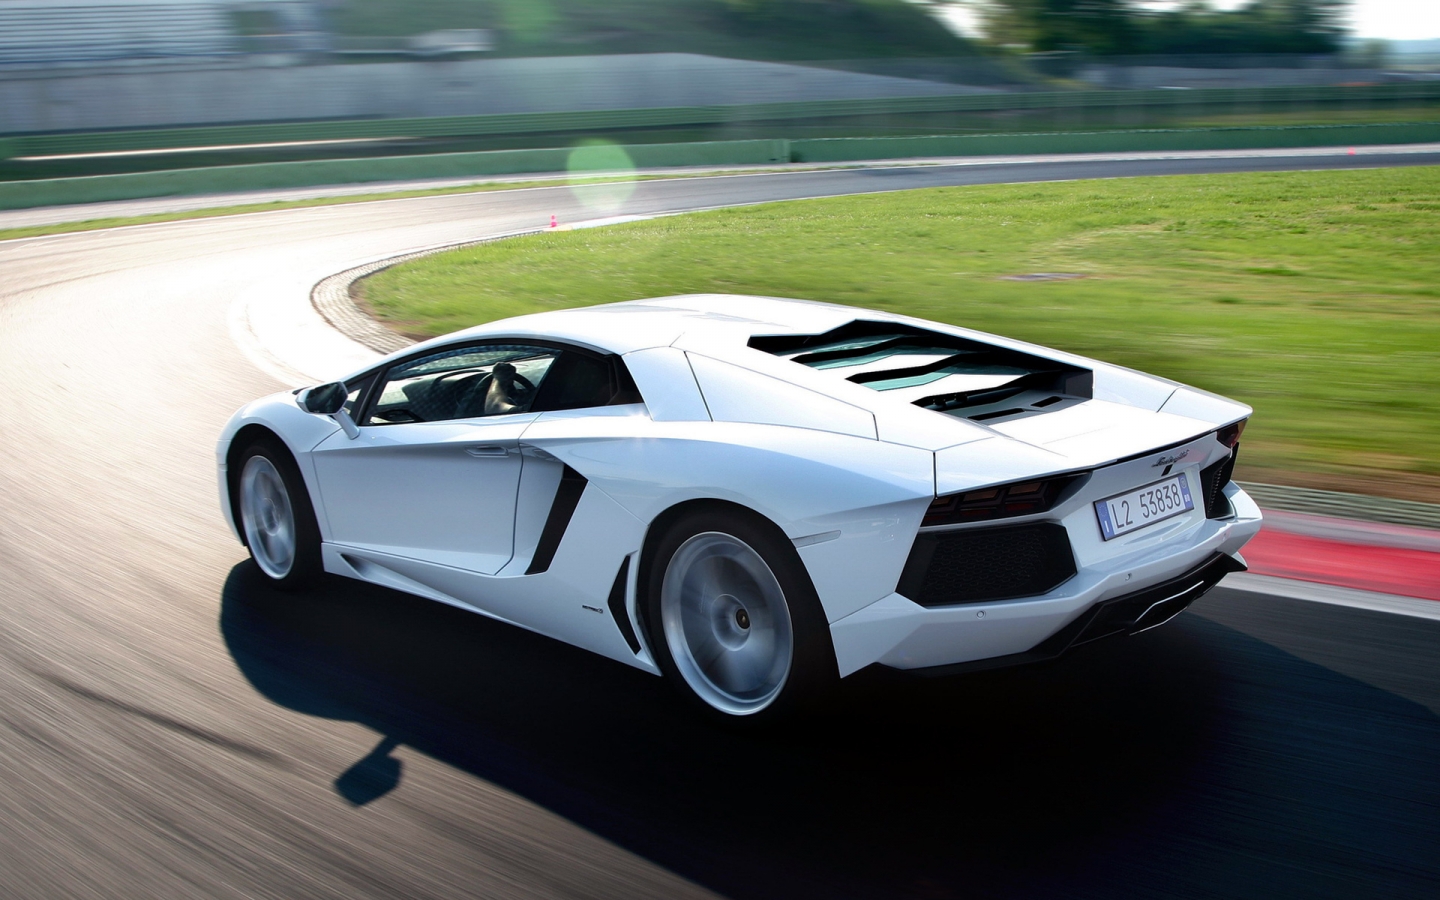 Lamborghini Aventador LP700 for 1440 x 900 widescreen resolution